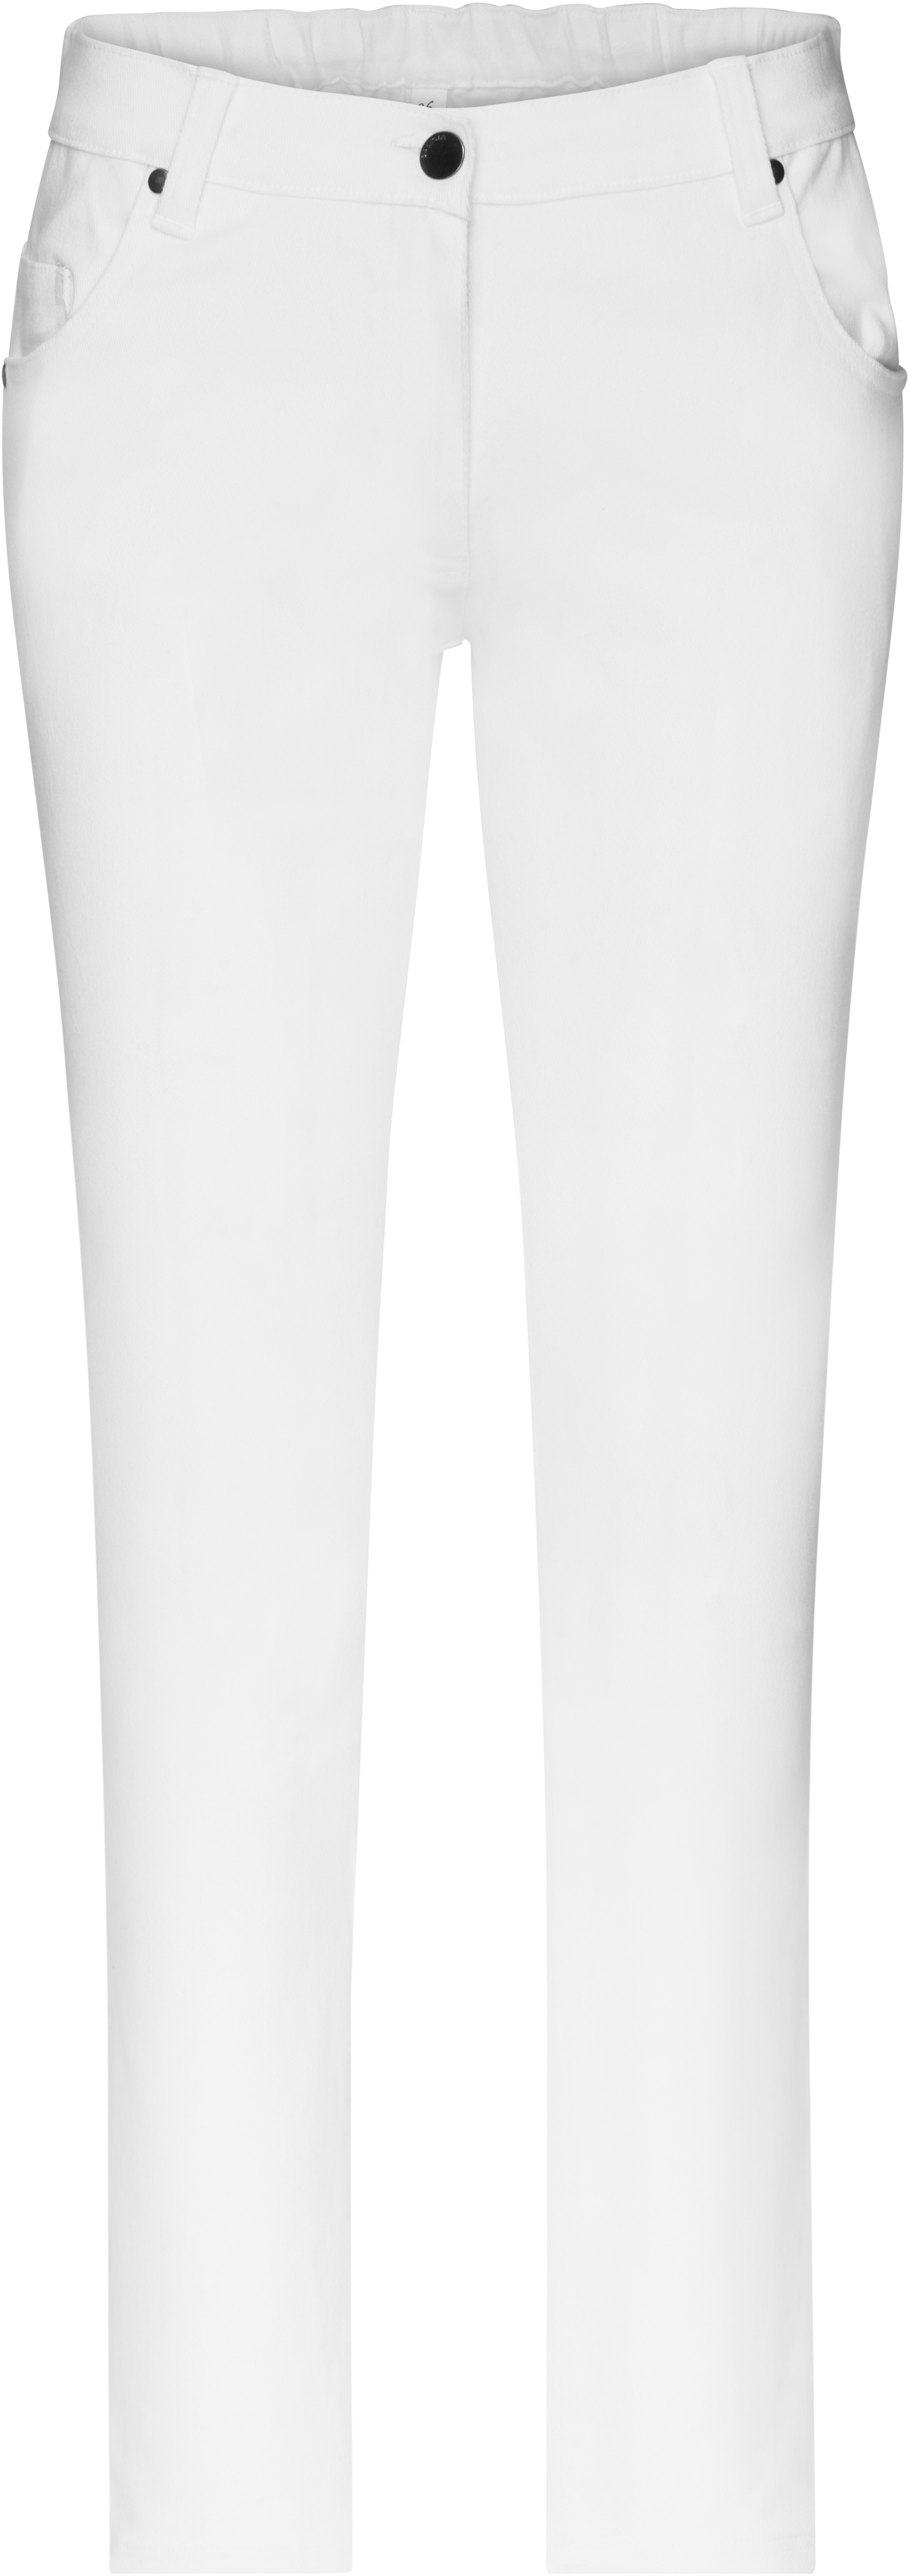 Dámské elastické kalhoty JN 3001 Barva: bílá, Velikost: 46